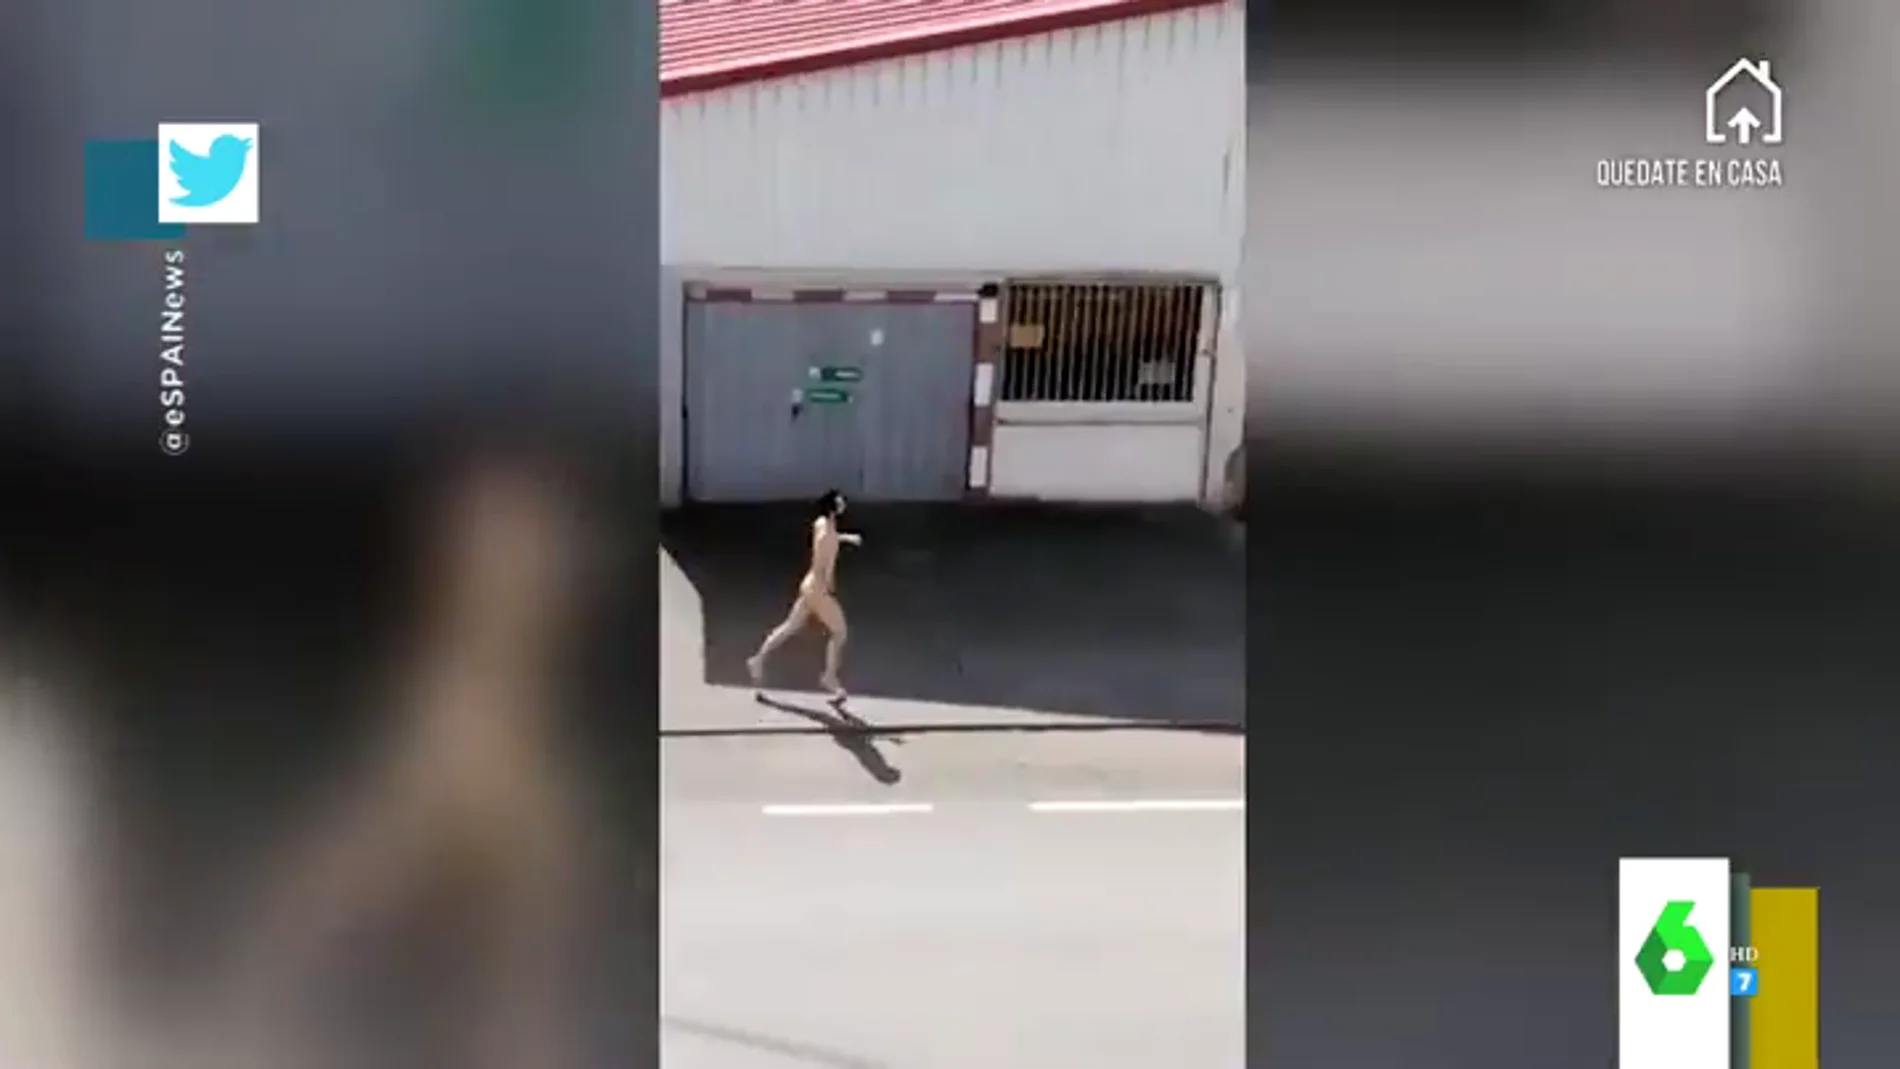 La persecución de la Policía a un joven corriendo desnudo en un pueblo de Asturias en pleno estado de alarma